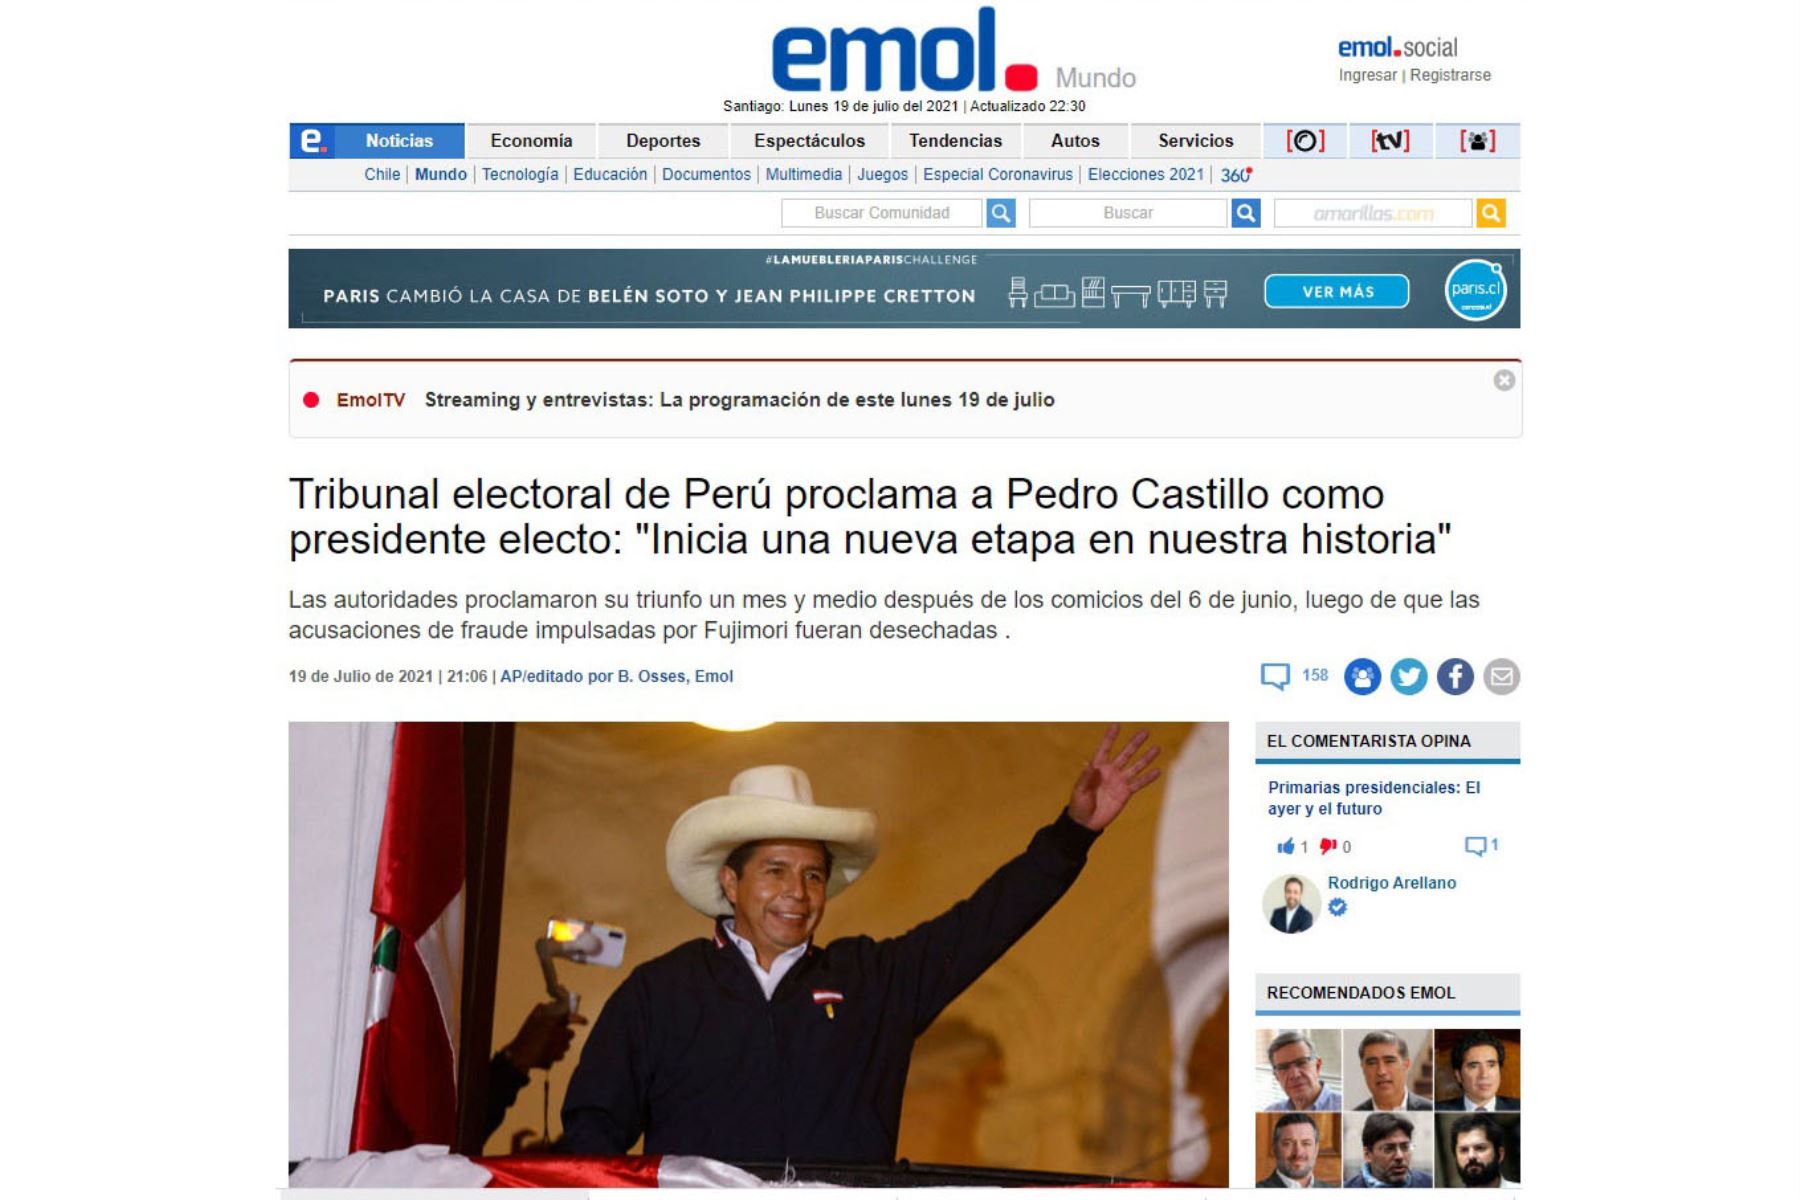 En portada Emol de Chile. Diarios del mundo, informan sobre la proclamación del presidente electo Pedro Castillo.
Foto: Captura TV